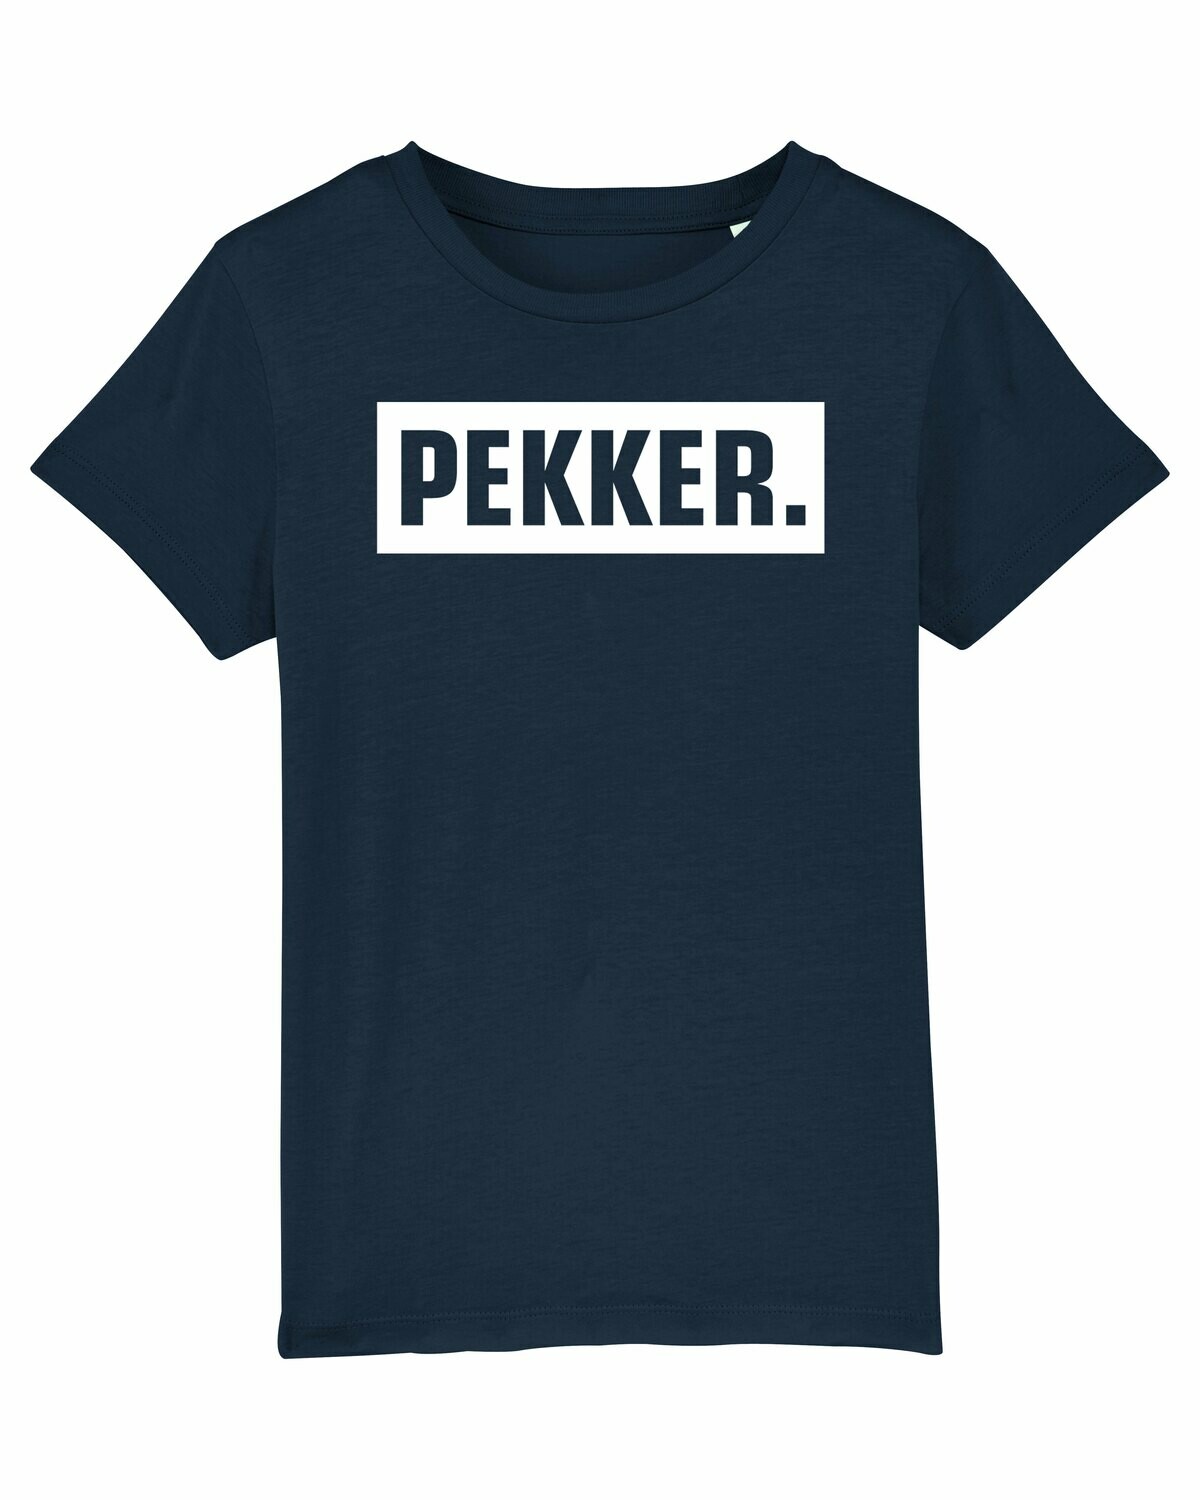 Kids T-shirt Pekker.